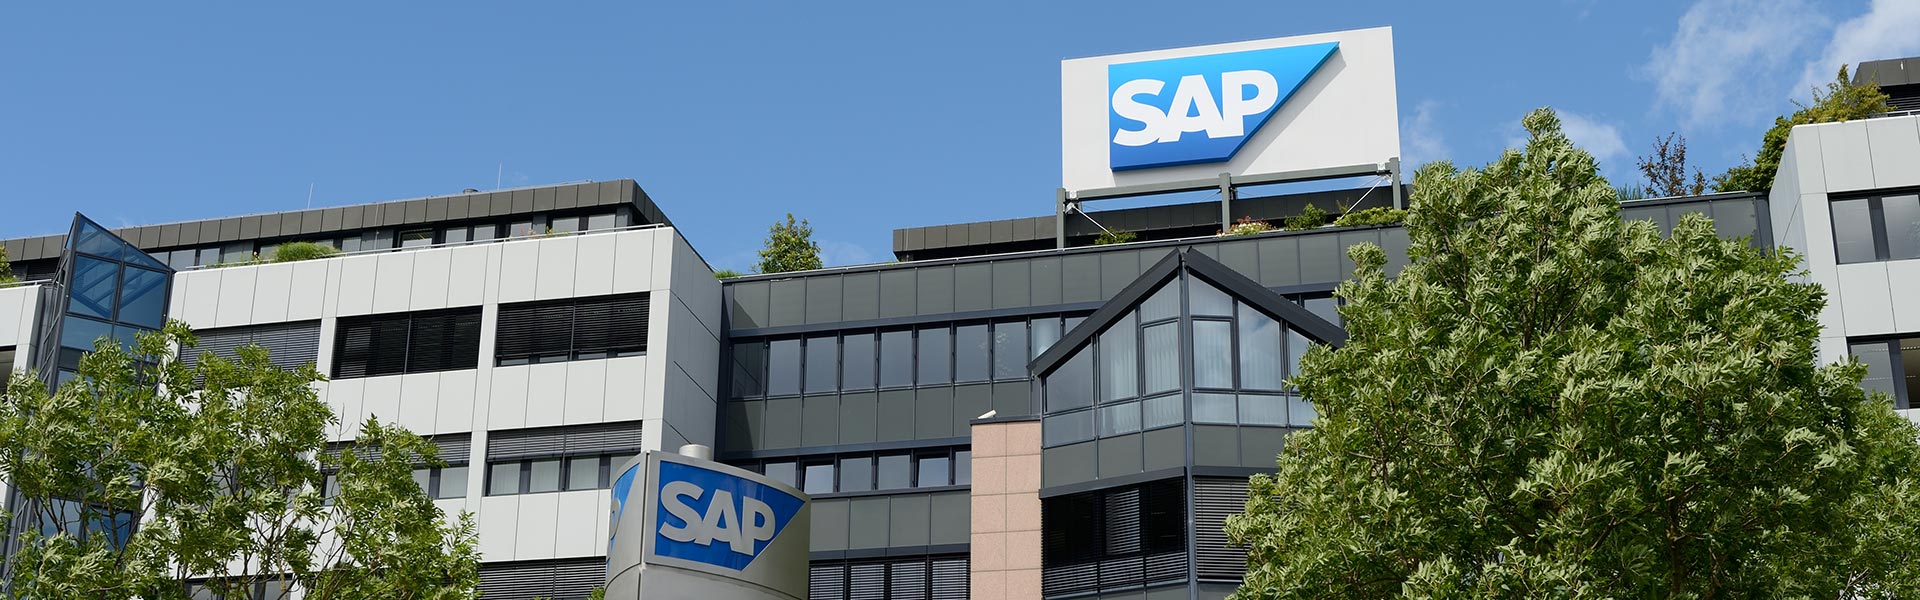 Prosegue la collaborazione fra SAP e MADE per accompagnare  le imprese verso una supply chain sostenibile e a prova di rischio